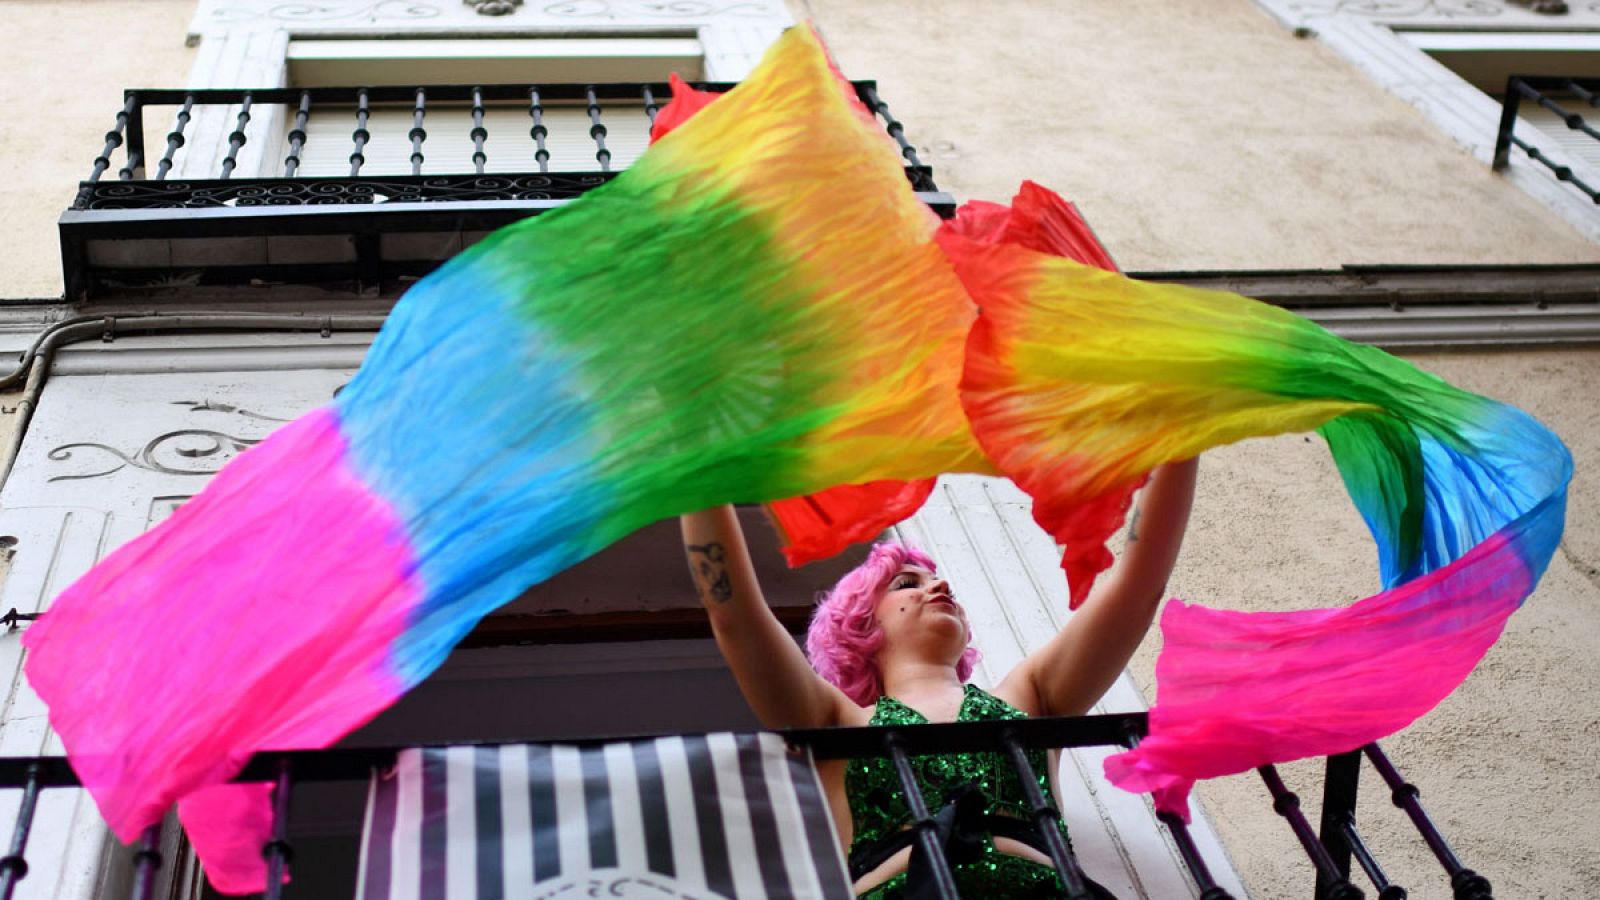 Orgullo Gay 2019: La manifestación del Orgullo recorrerá este sábado el centro de Madrid y rendirá homenaje a los mayores LGTBIQ